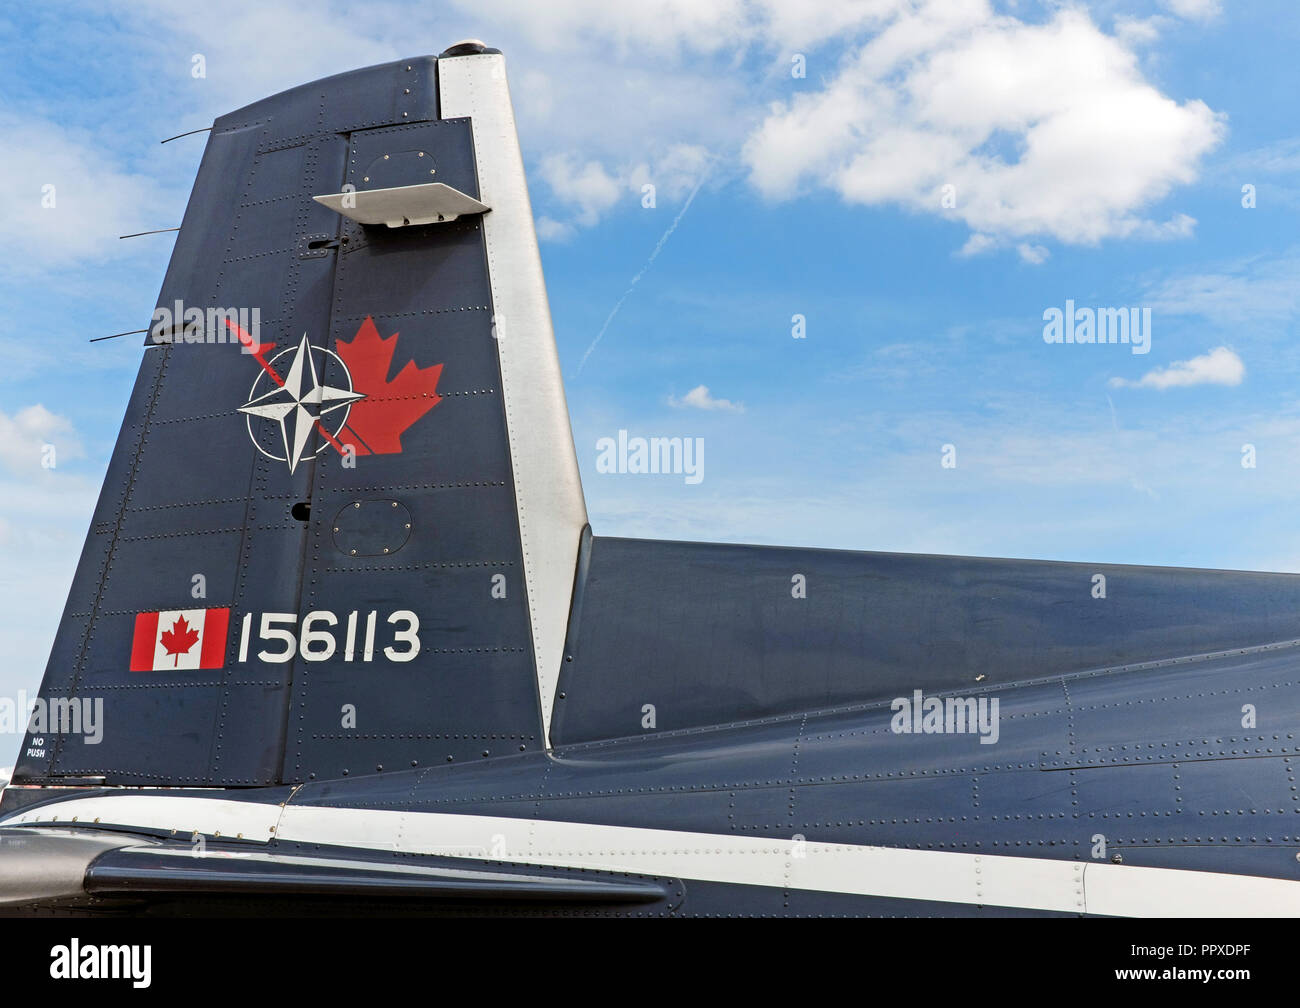 Royal Canadian Airforce Starrflügelturbinenflugzeug mit einmotorigem Turboantrieb von Raytheon auf der Cleveland Air Show 2018 in Cleveland, Ohio, USA. Stockfoto